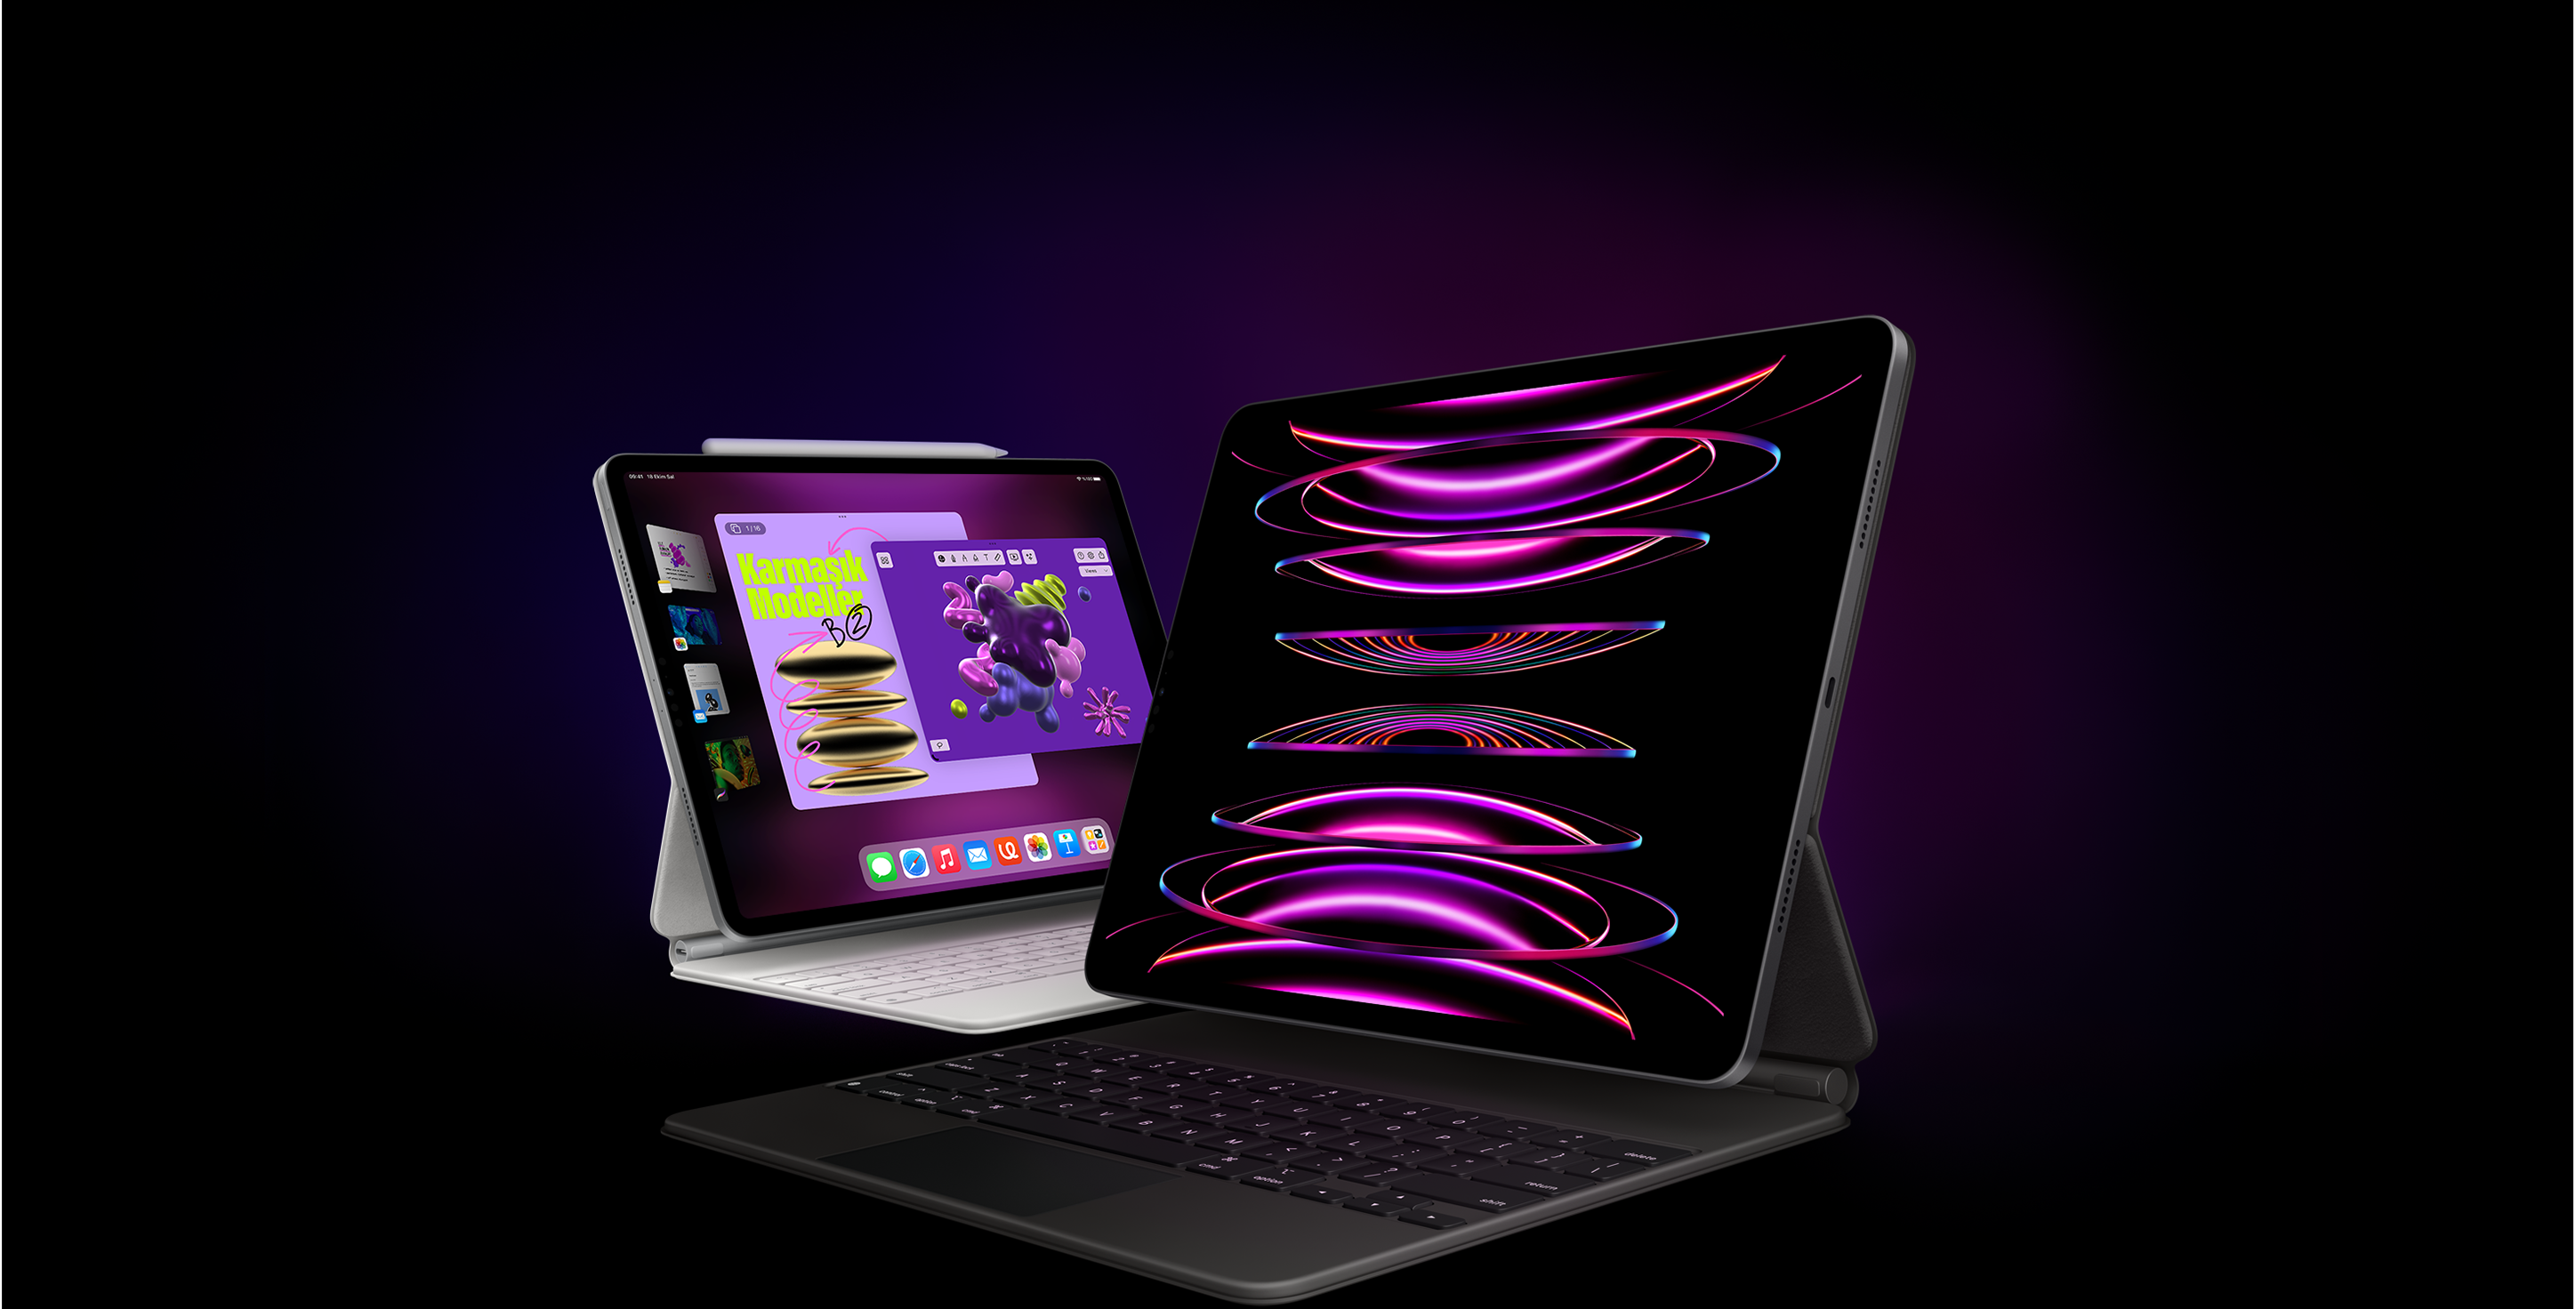 Ön planda, ekranında duvar kağıdı olan bir iPad Pro ile siyah Magic Keyboard, biraz arkalarında ise ekranında Sahne Yöneticisi açık olan bir iPad Pro ile beyaz Magic Keyboard ve Apple Pencil gösteriliyor.